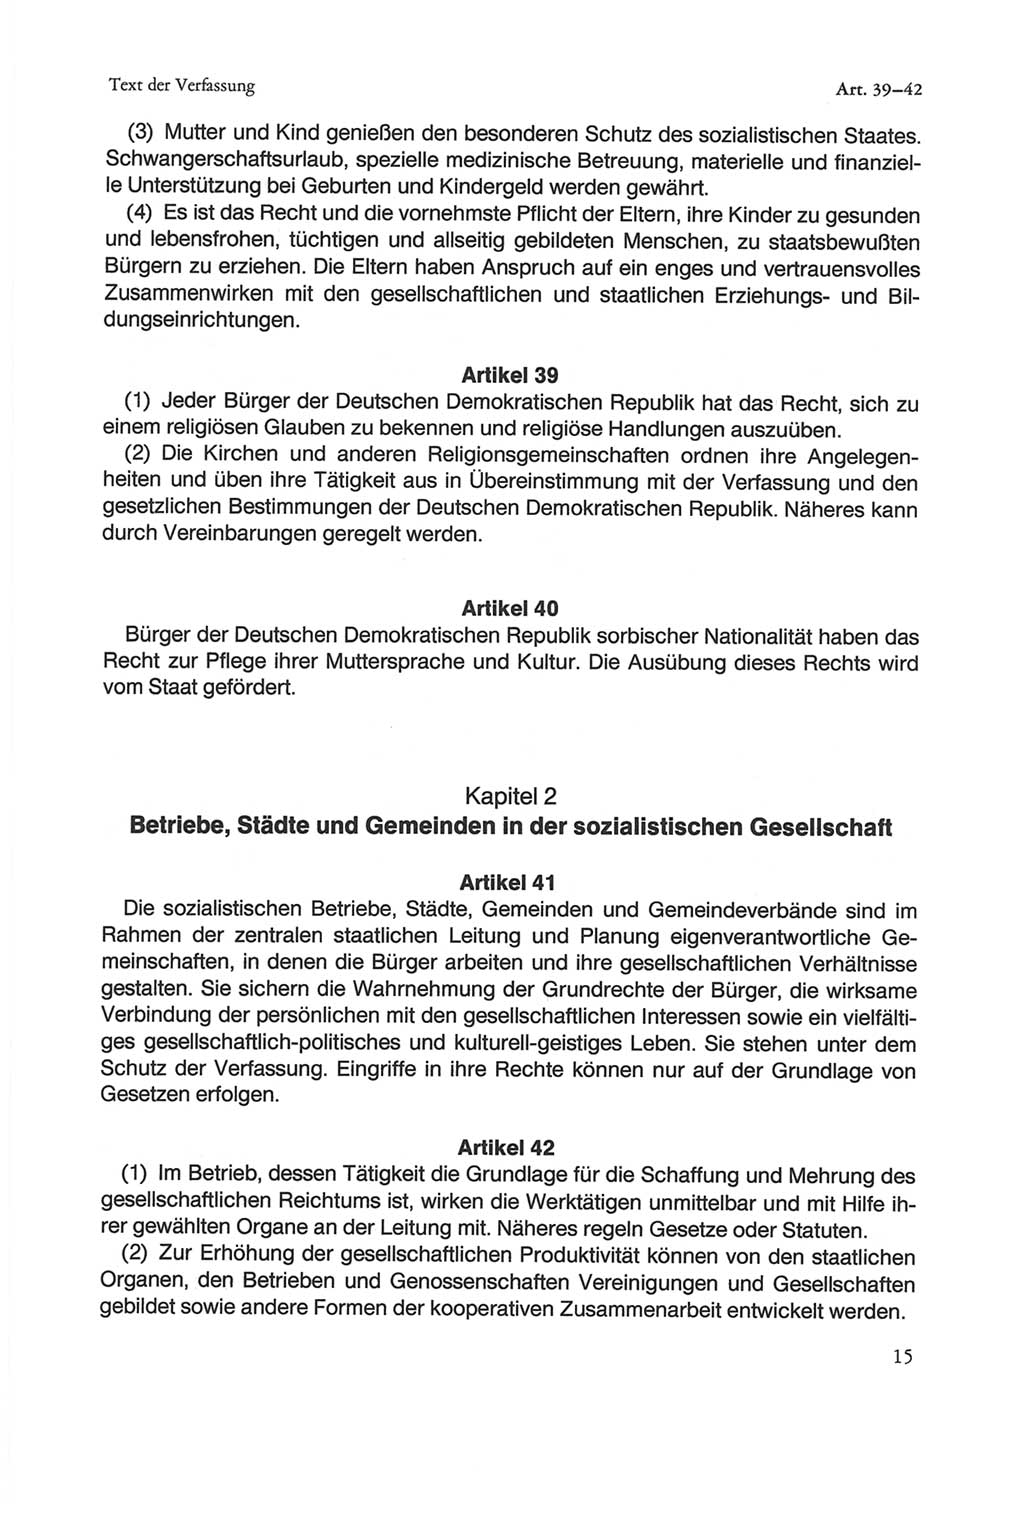 Die sozialistische Verfassung der Deutschen Demokratischen Republik (DDR), Kommentar 1982, Seite 15 (Soz. Verf. DDR Komm. 1982, S. 15)